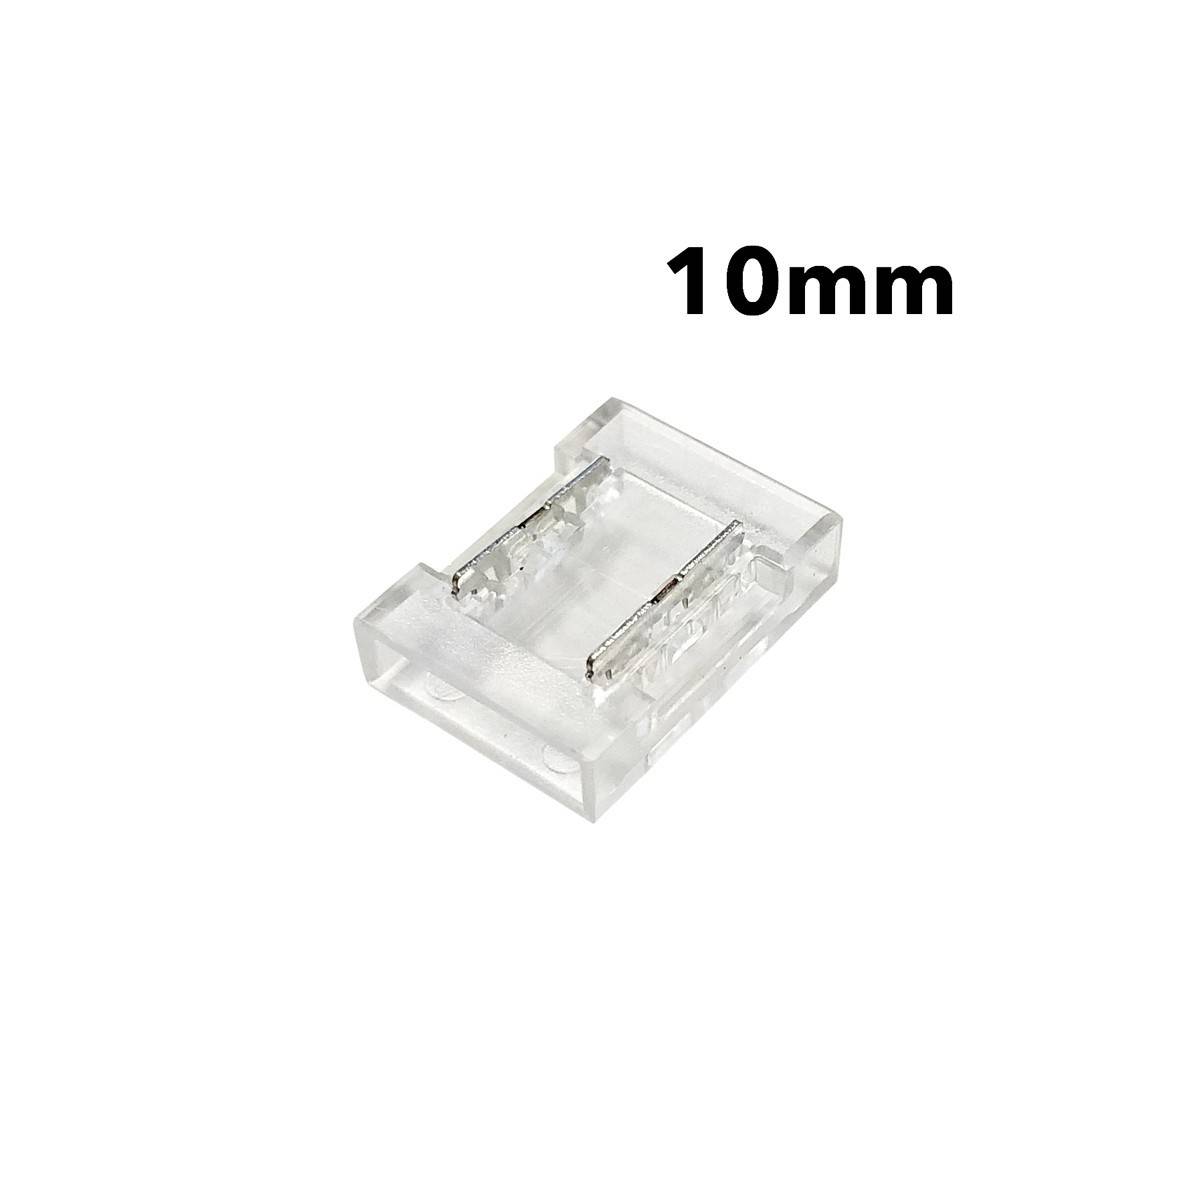 Conector para tira a tira COB CLIP INVISIBLE 2 pin 10mm IP20